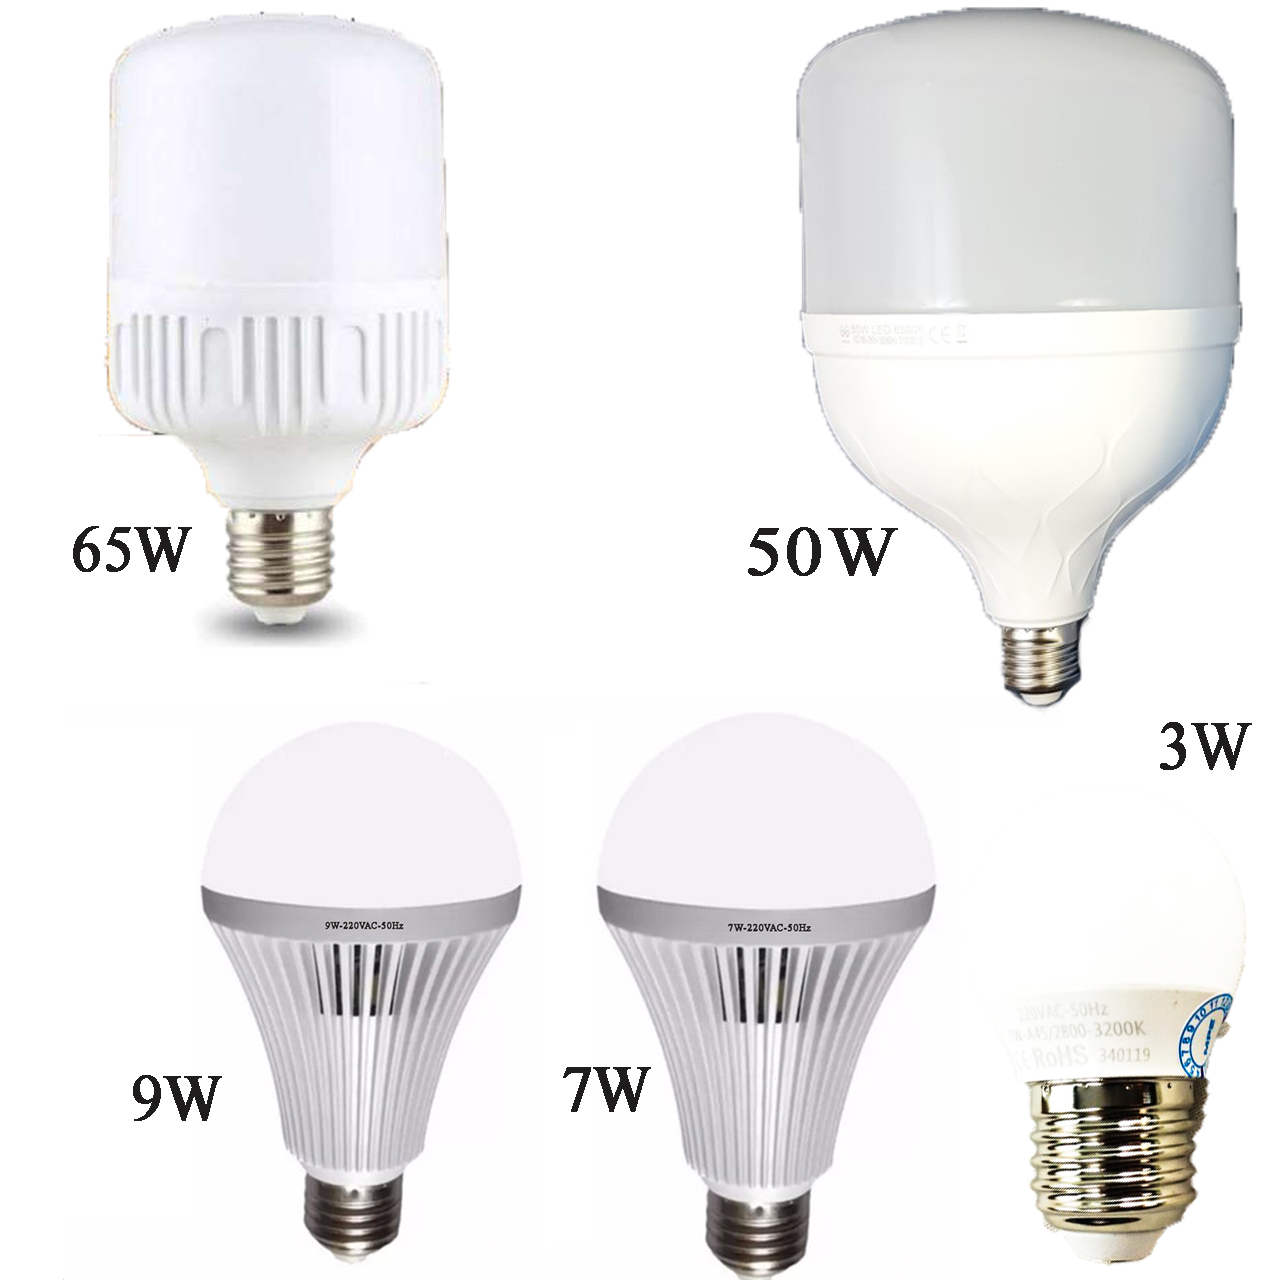 Bóng đèn Led Bulb 3W 7W 9W 50W 65W siêu sáng siêu tiết kiệmgng( 1 Bóng )